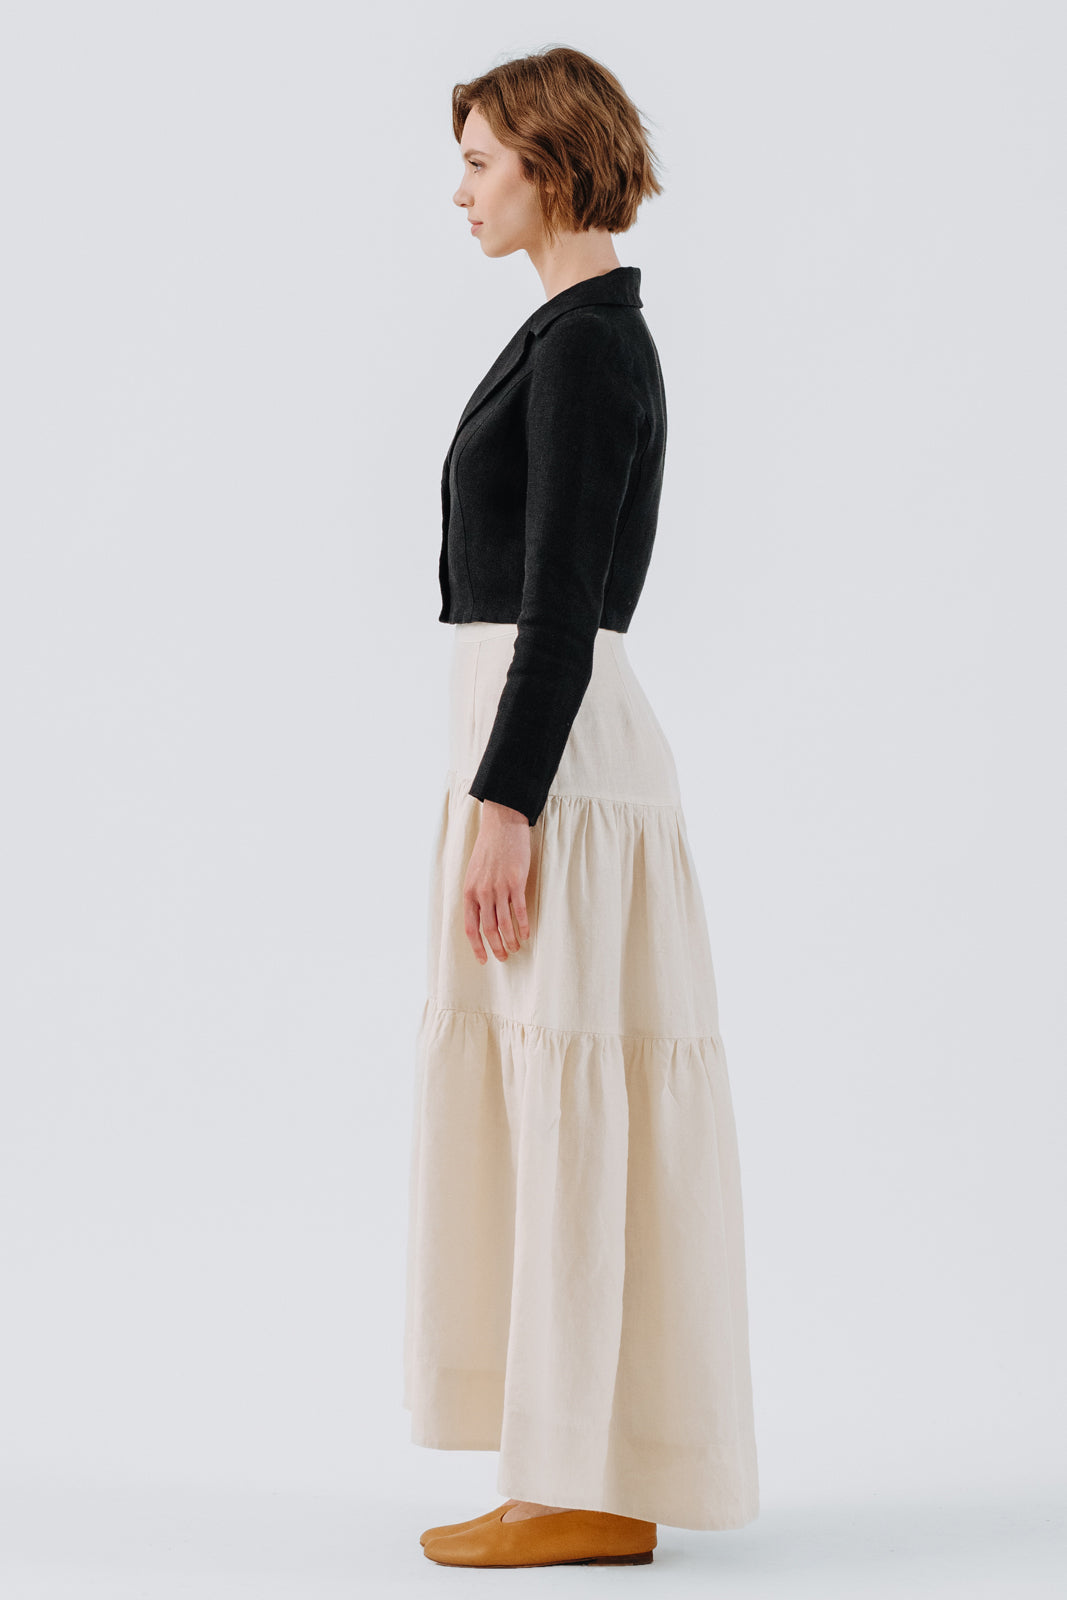 Tiered Skirt, Hemp, Milky White